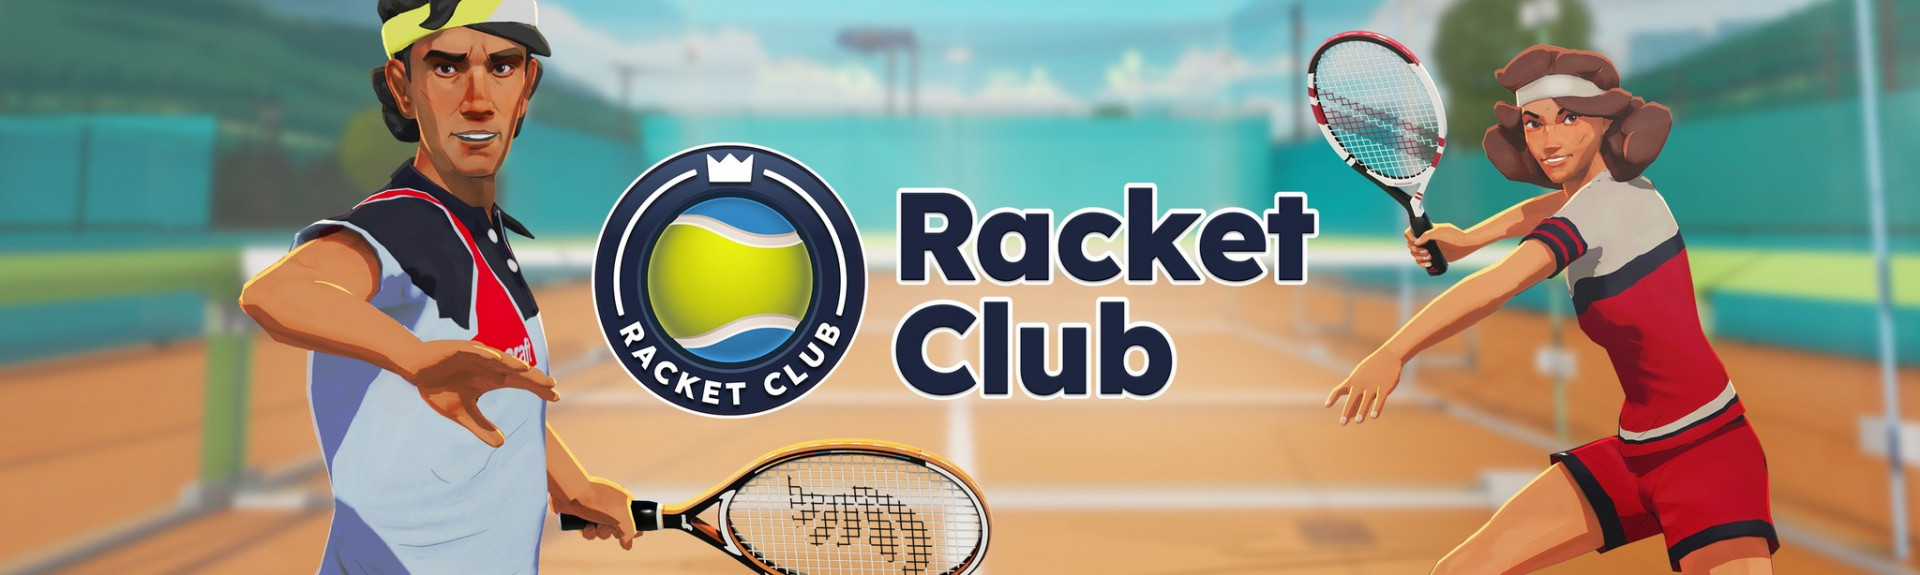 Racket Club: ANÁLISIS